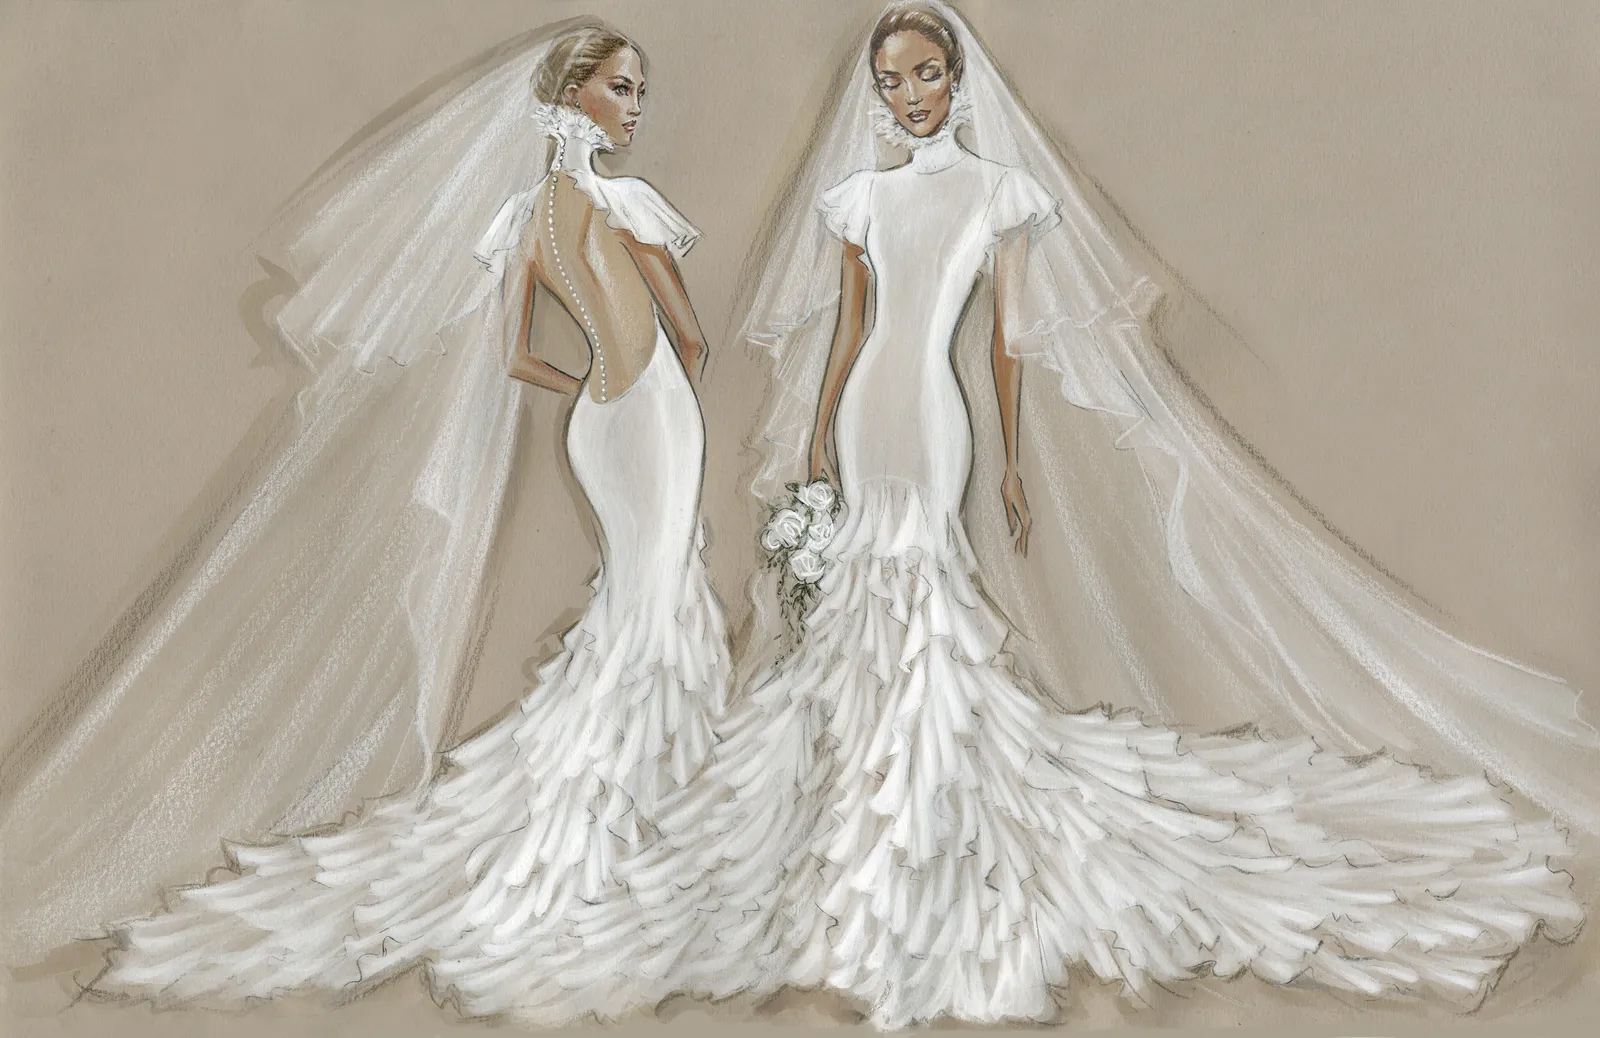 ДженниферЛопес образ невеста церемония видео ролик бренд свадьба платье